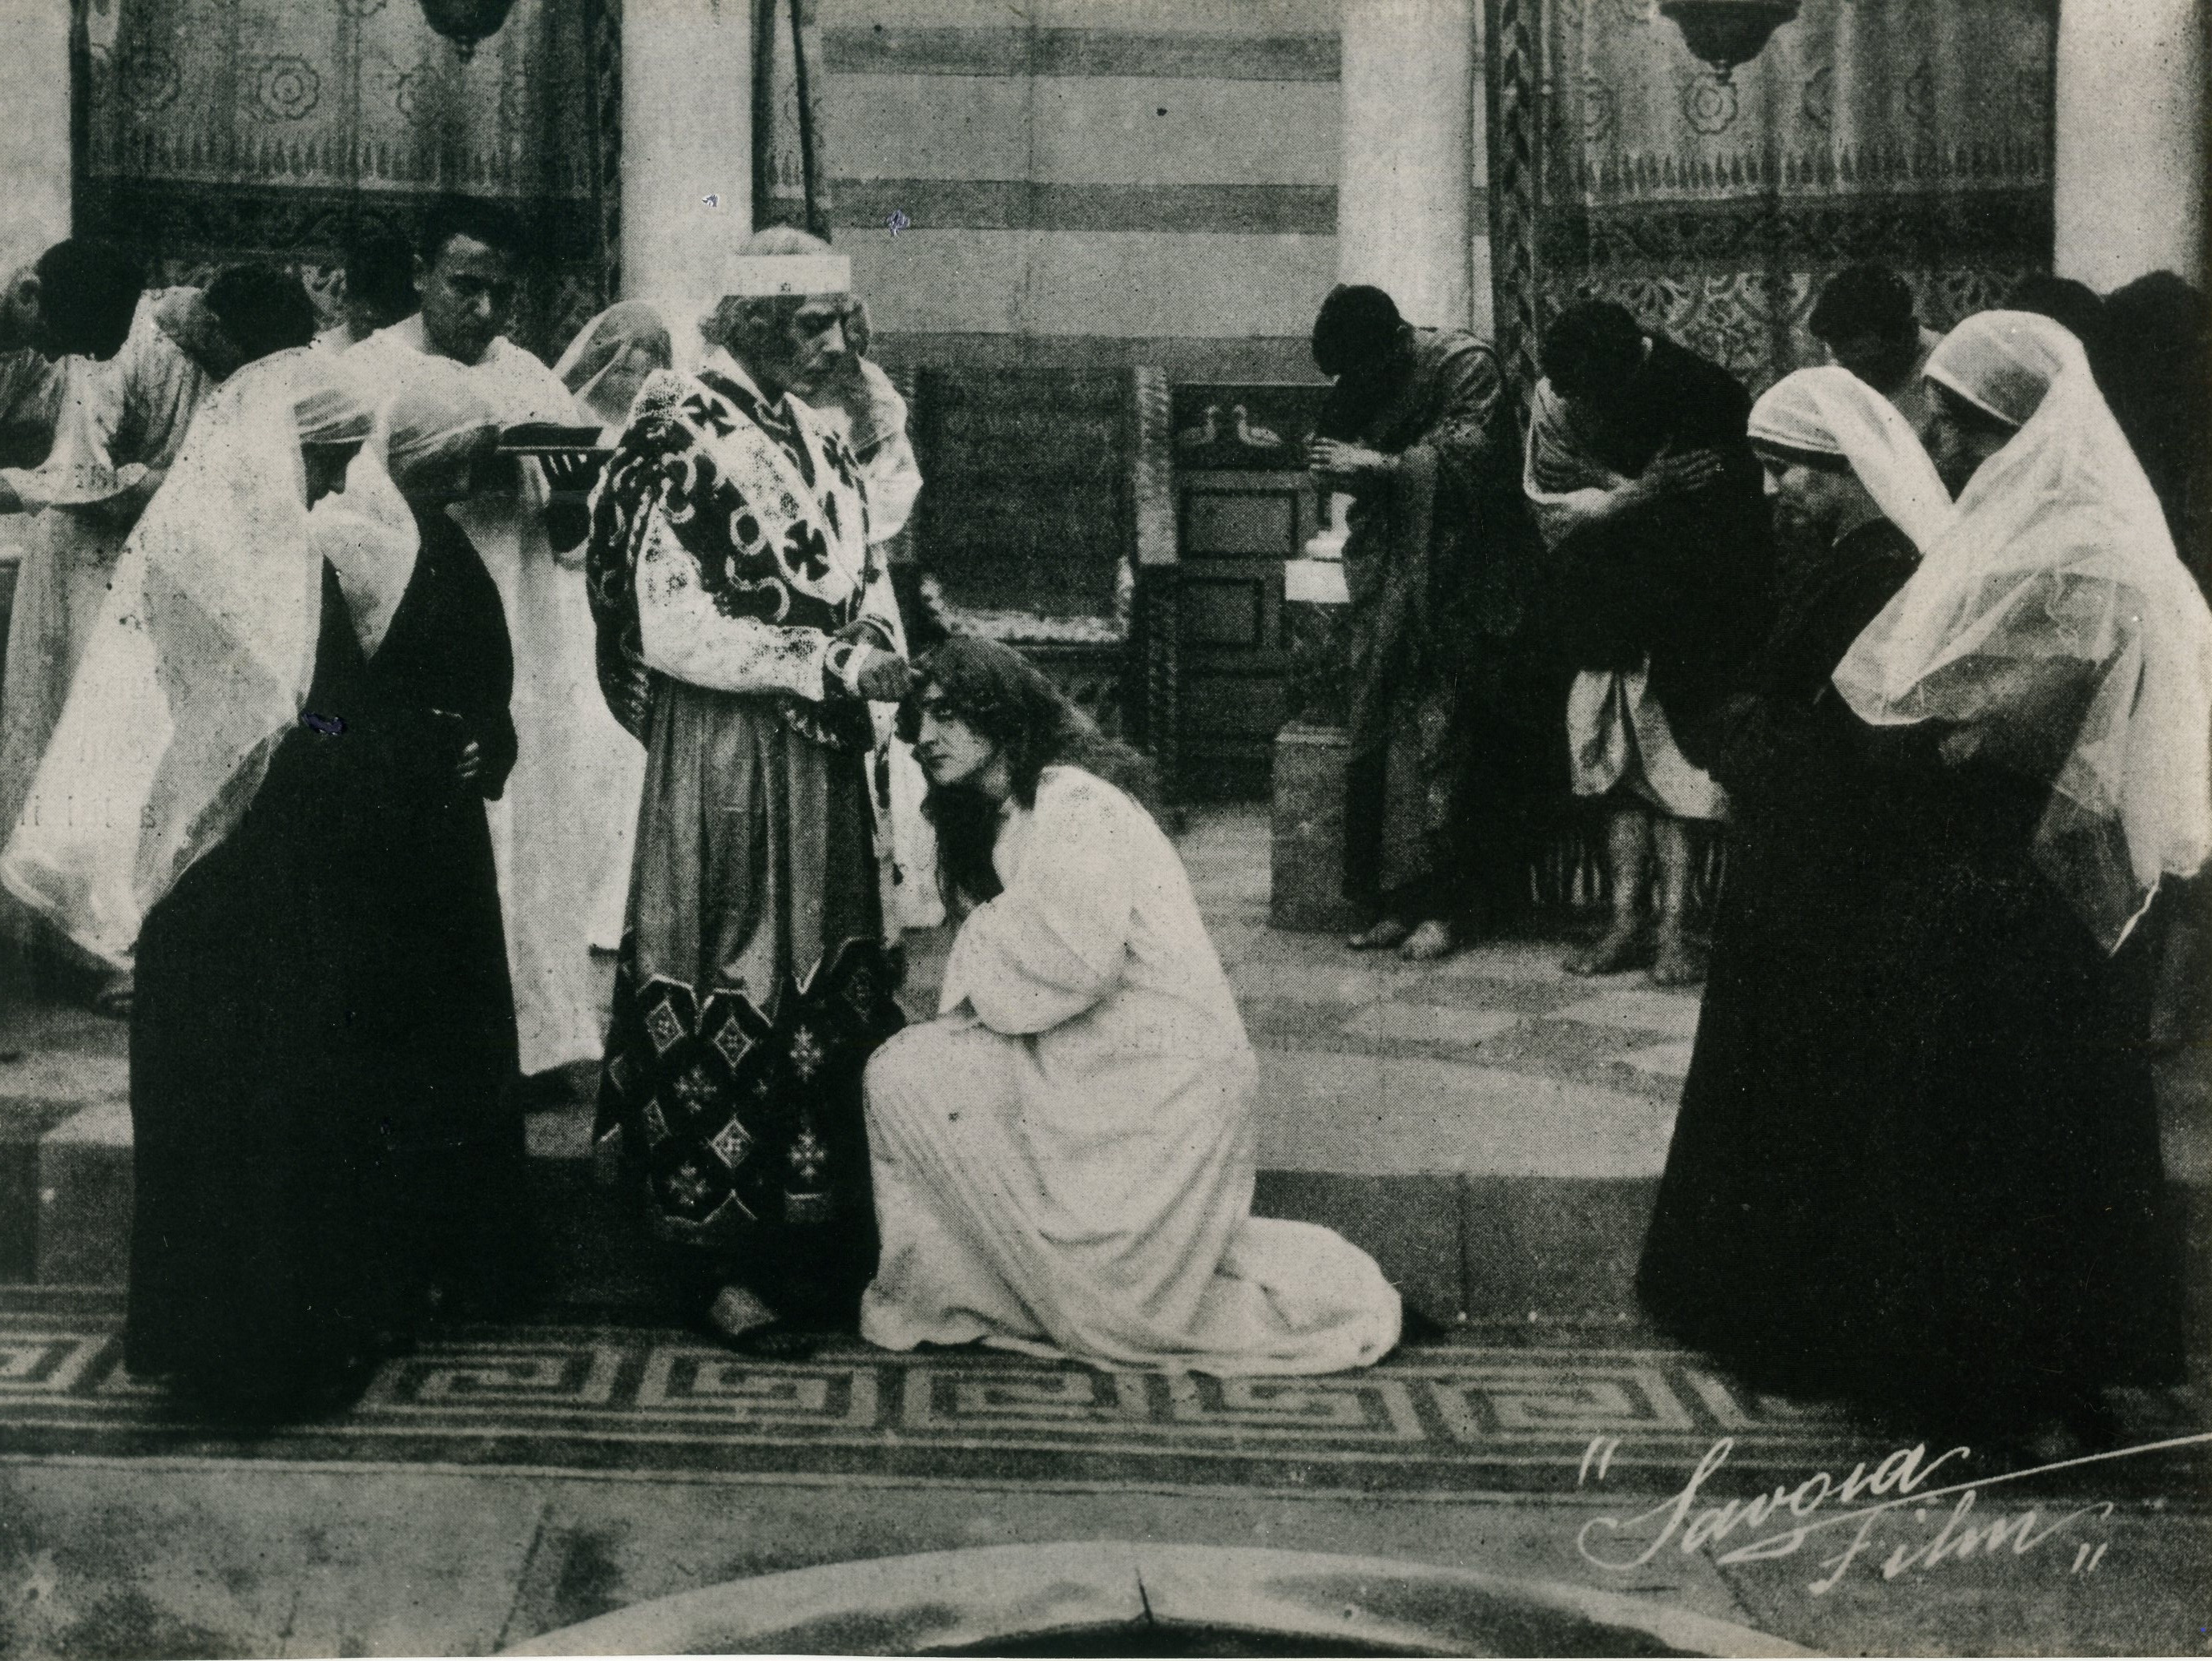 Una scena da In hoc signo vinces! di Nino Oxilia, Savoia film,1913. Collezione Fondo Turconi, Pavia
